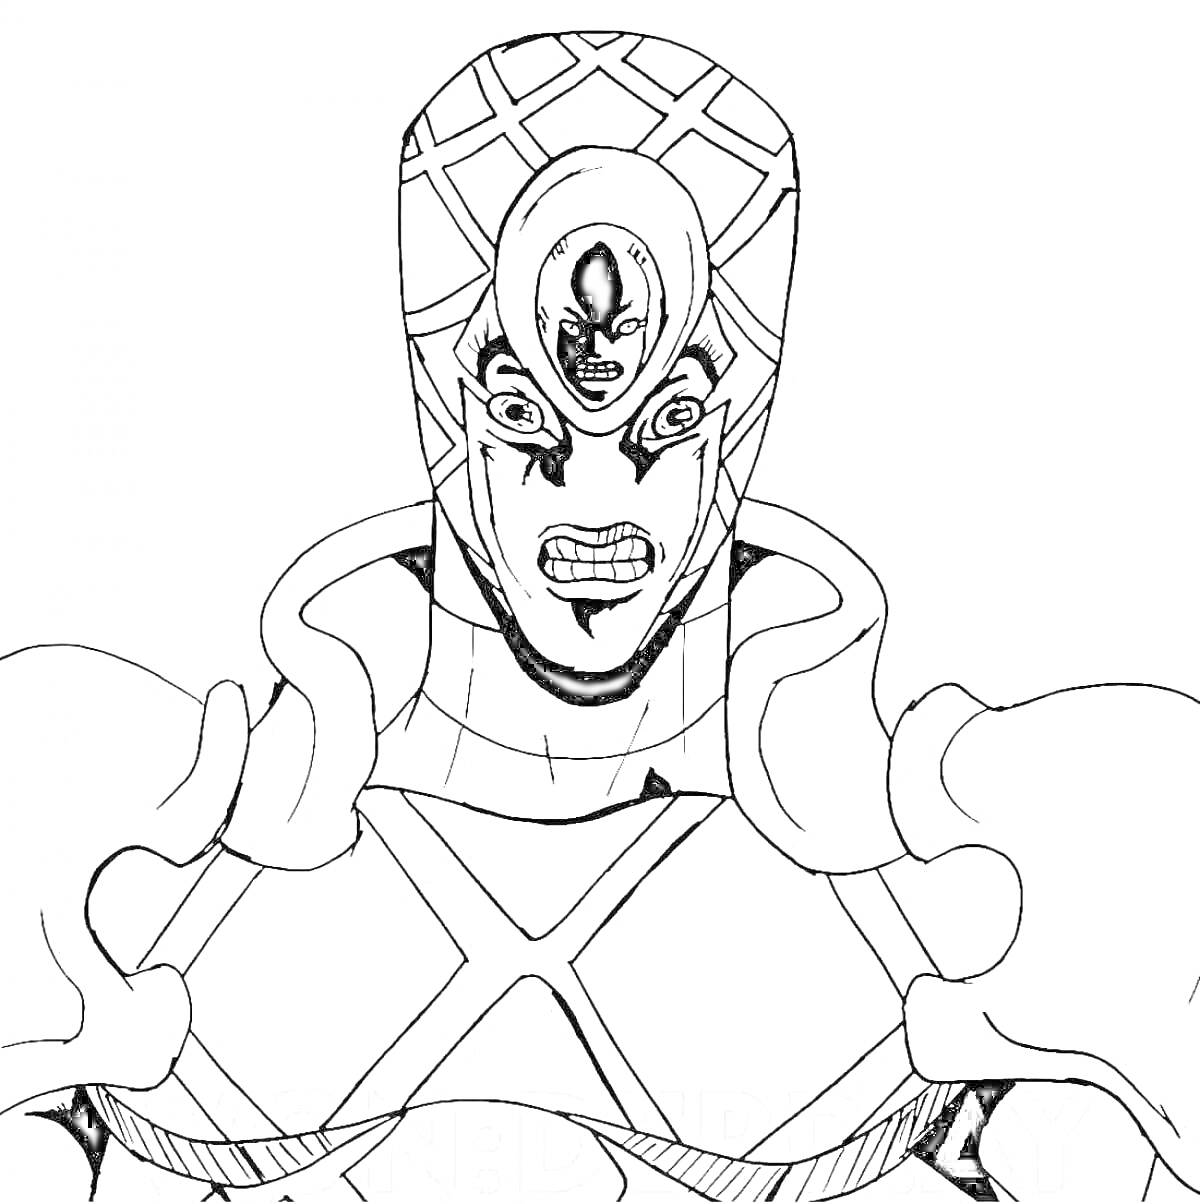 Персонаж из JoJo's Bizarre Adventure в доспехах с выразительным лицом и шлемом с диагональной сеткой